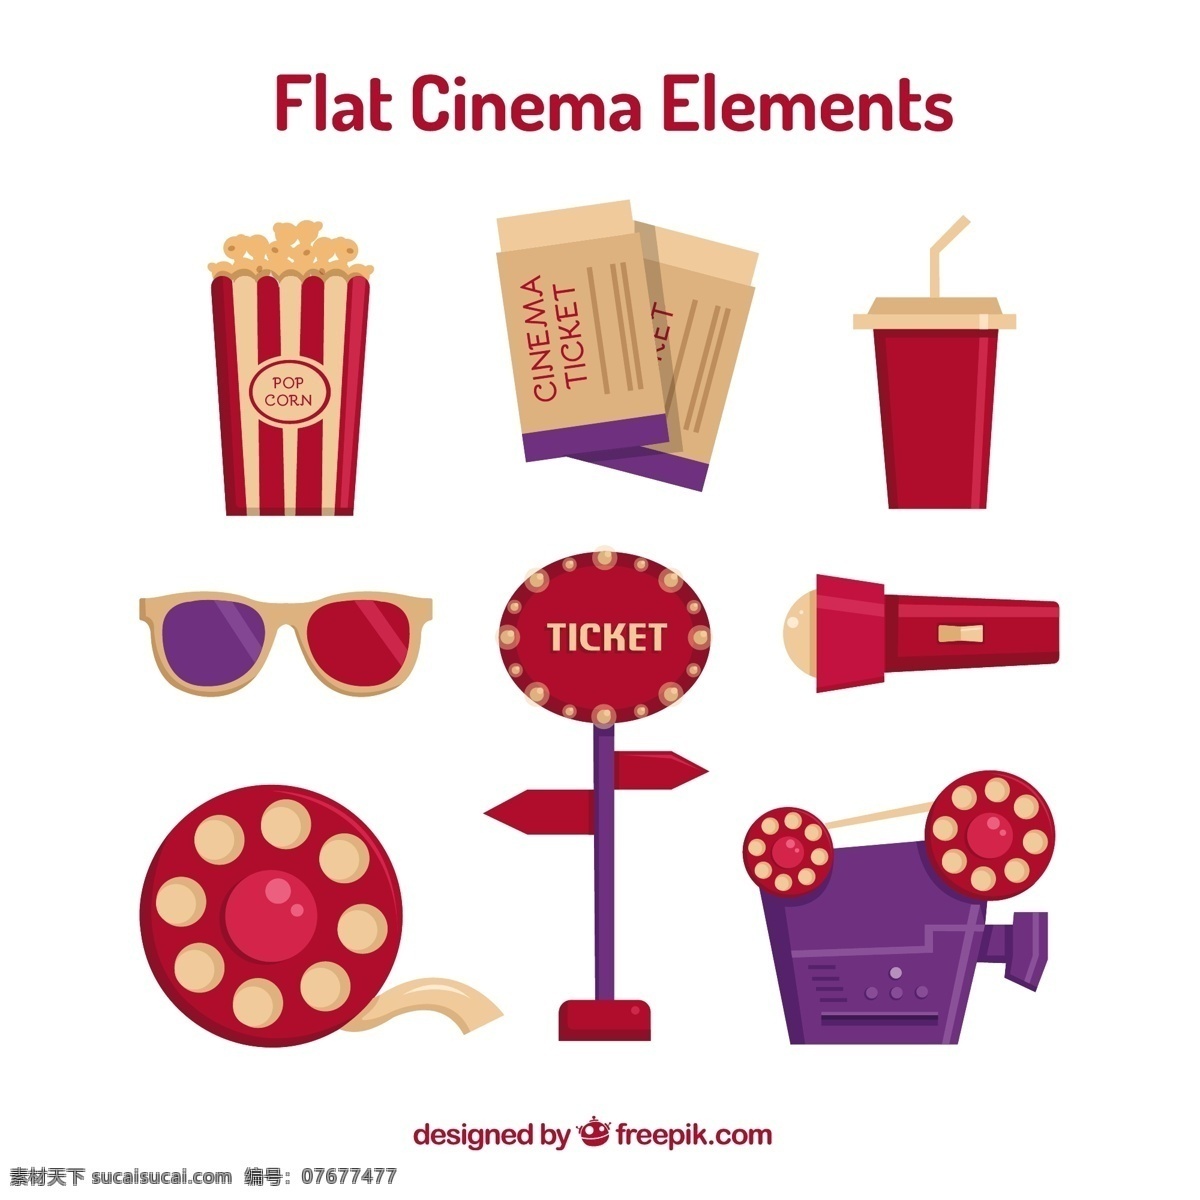 红色 紫色 平面 电影 配件 相机 电影院 眼镜 标志 平板 饮料 颜色 娱乐 节目 爆米花 门票 信号 电影卷轴